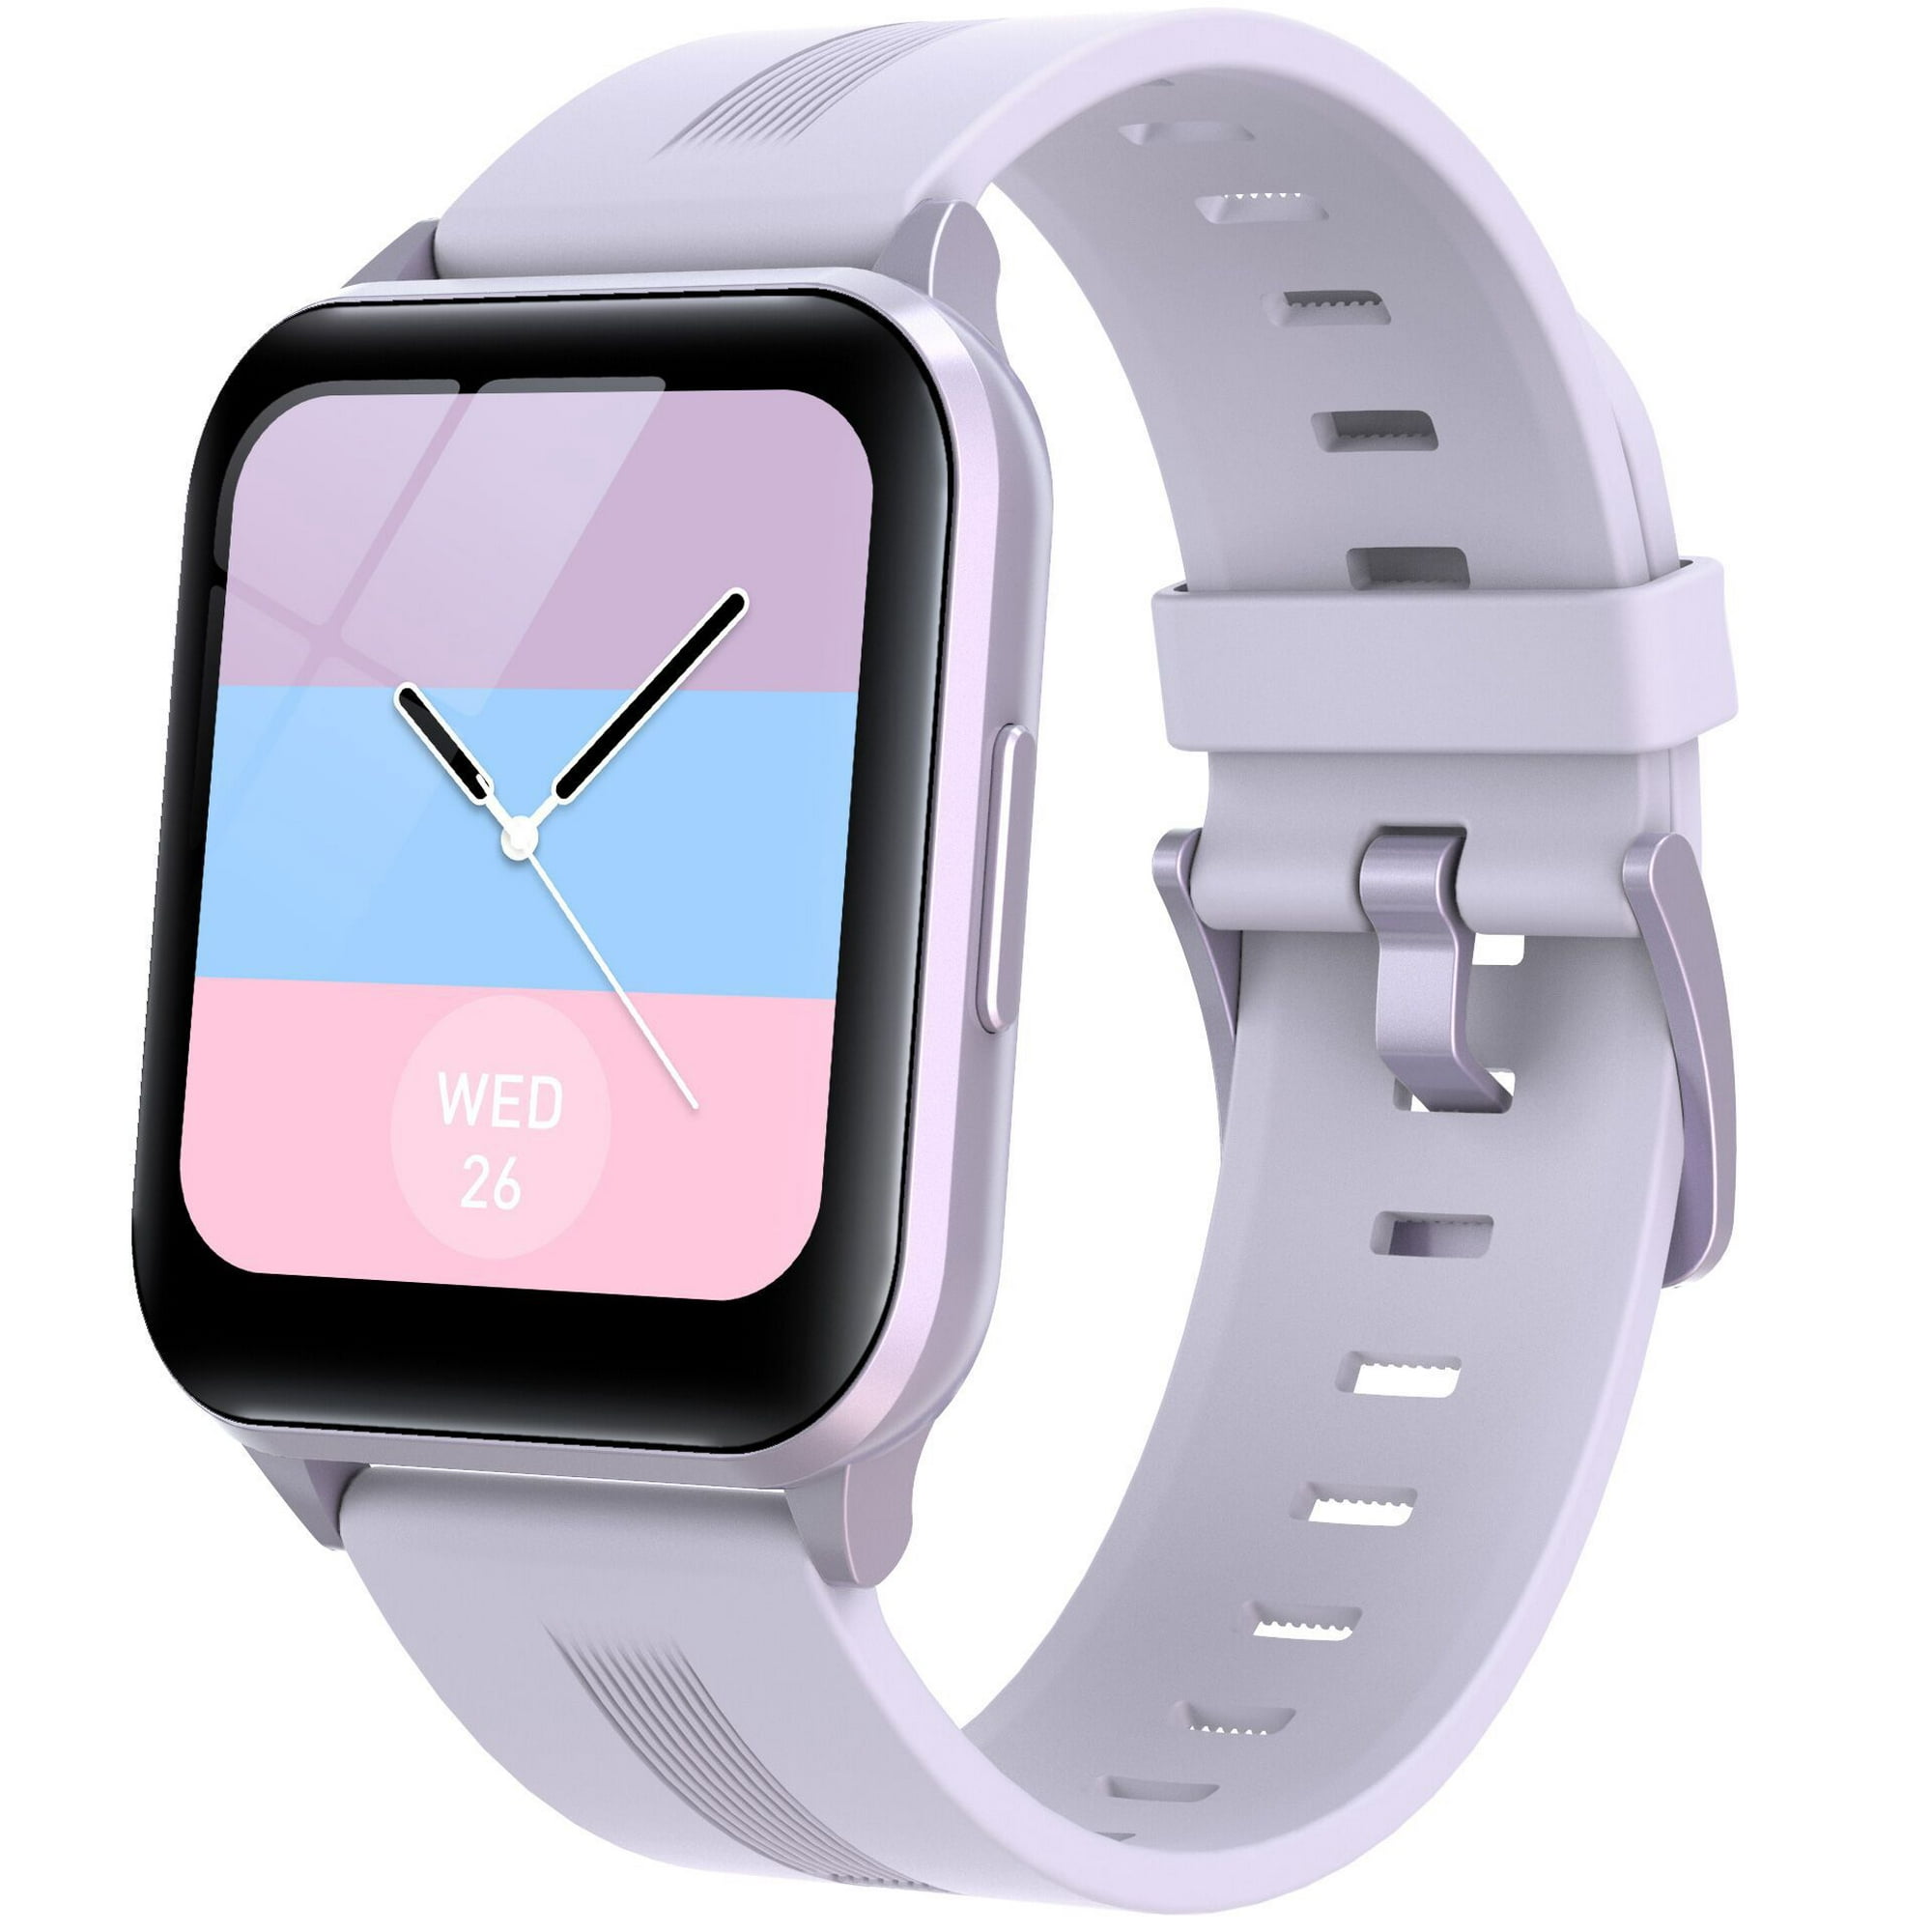 Amazfit Bip 3 - Reloj inteligente para iPhone Android, rastreador de  fitness con pantalla grande de 1.69 pulgadas, duración de la batería de 14  días